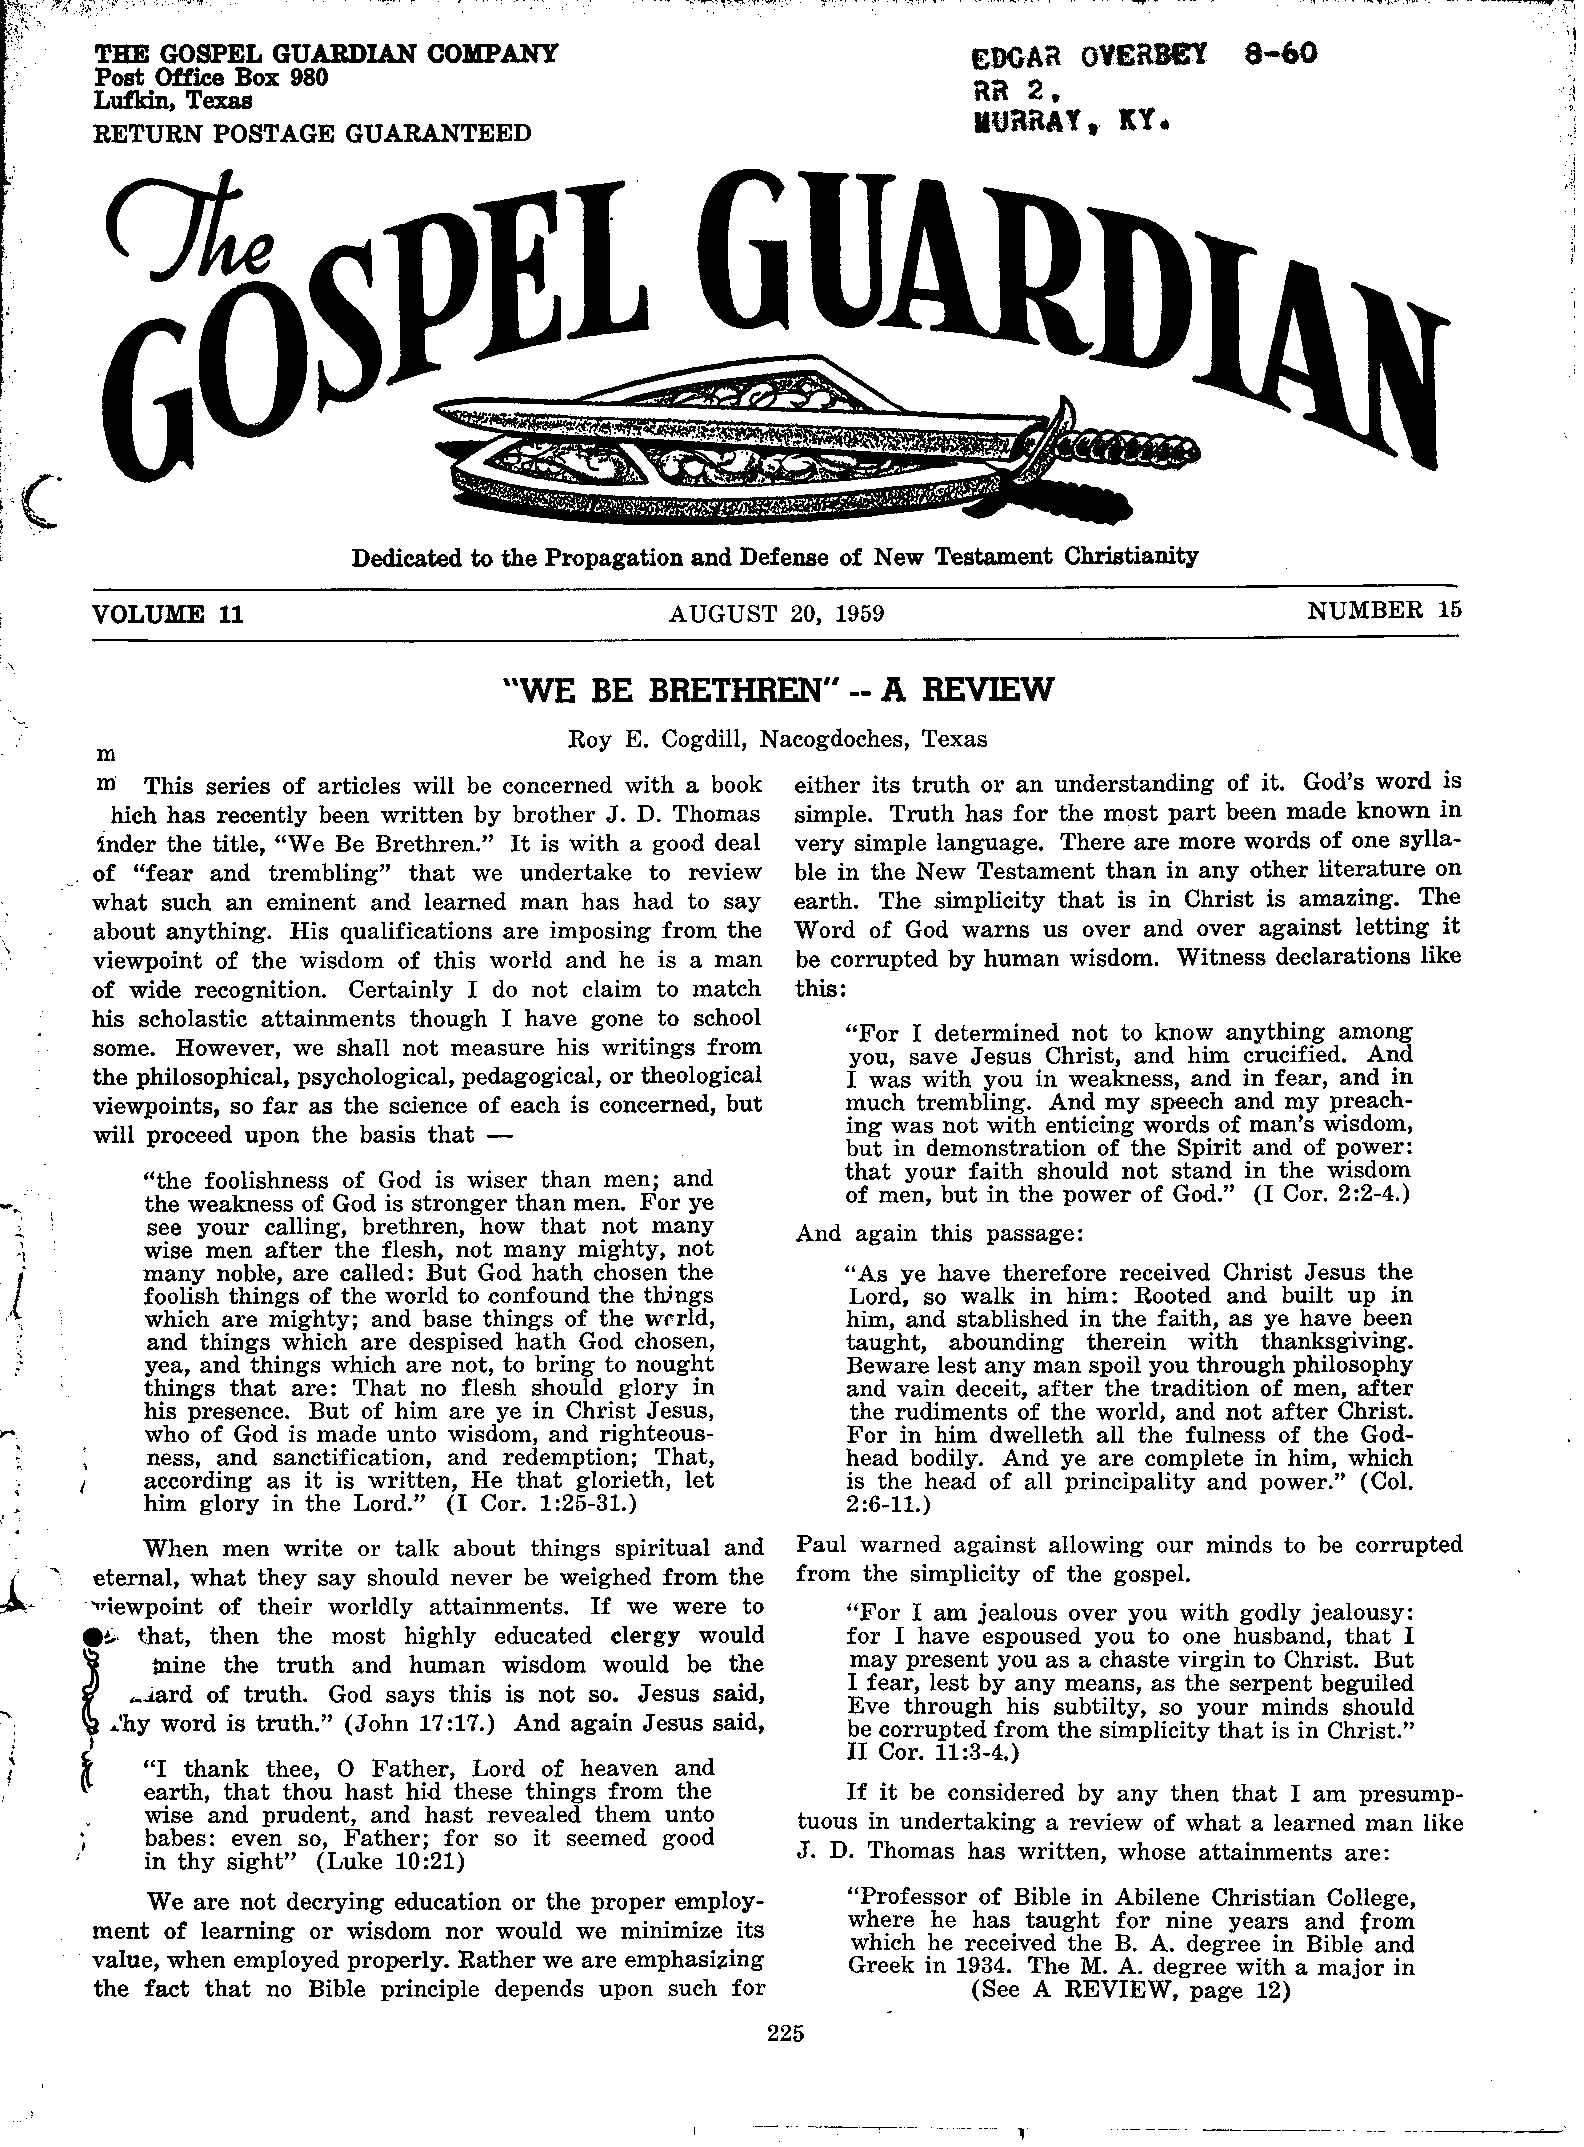 Gospel Guardian Original: Vol.11 No.15 Pg.1